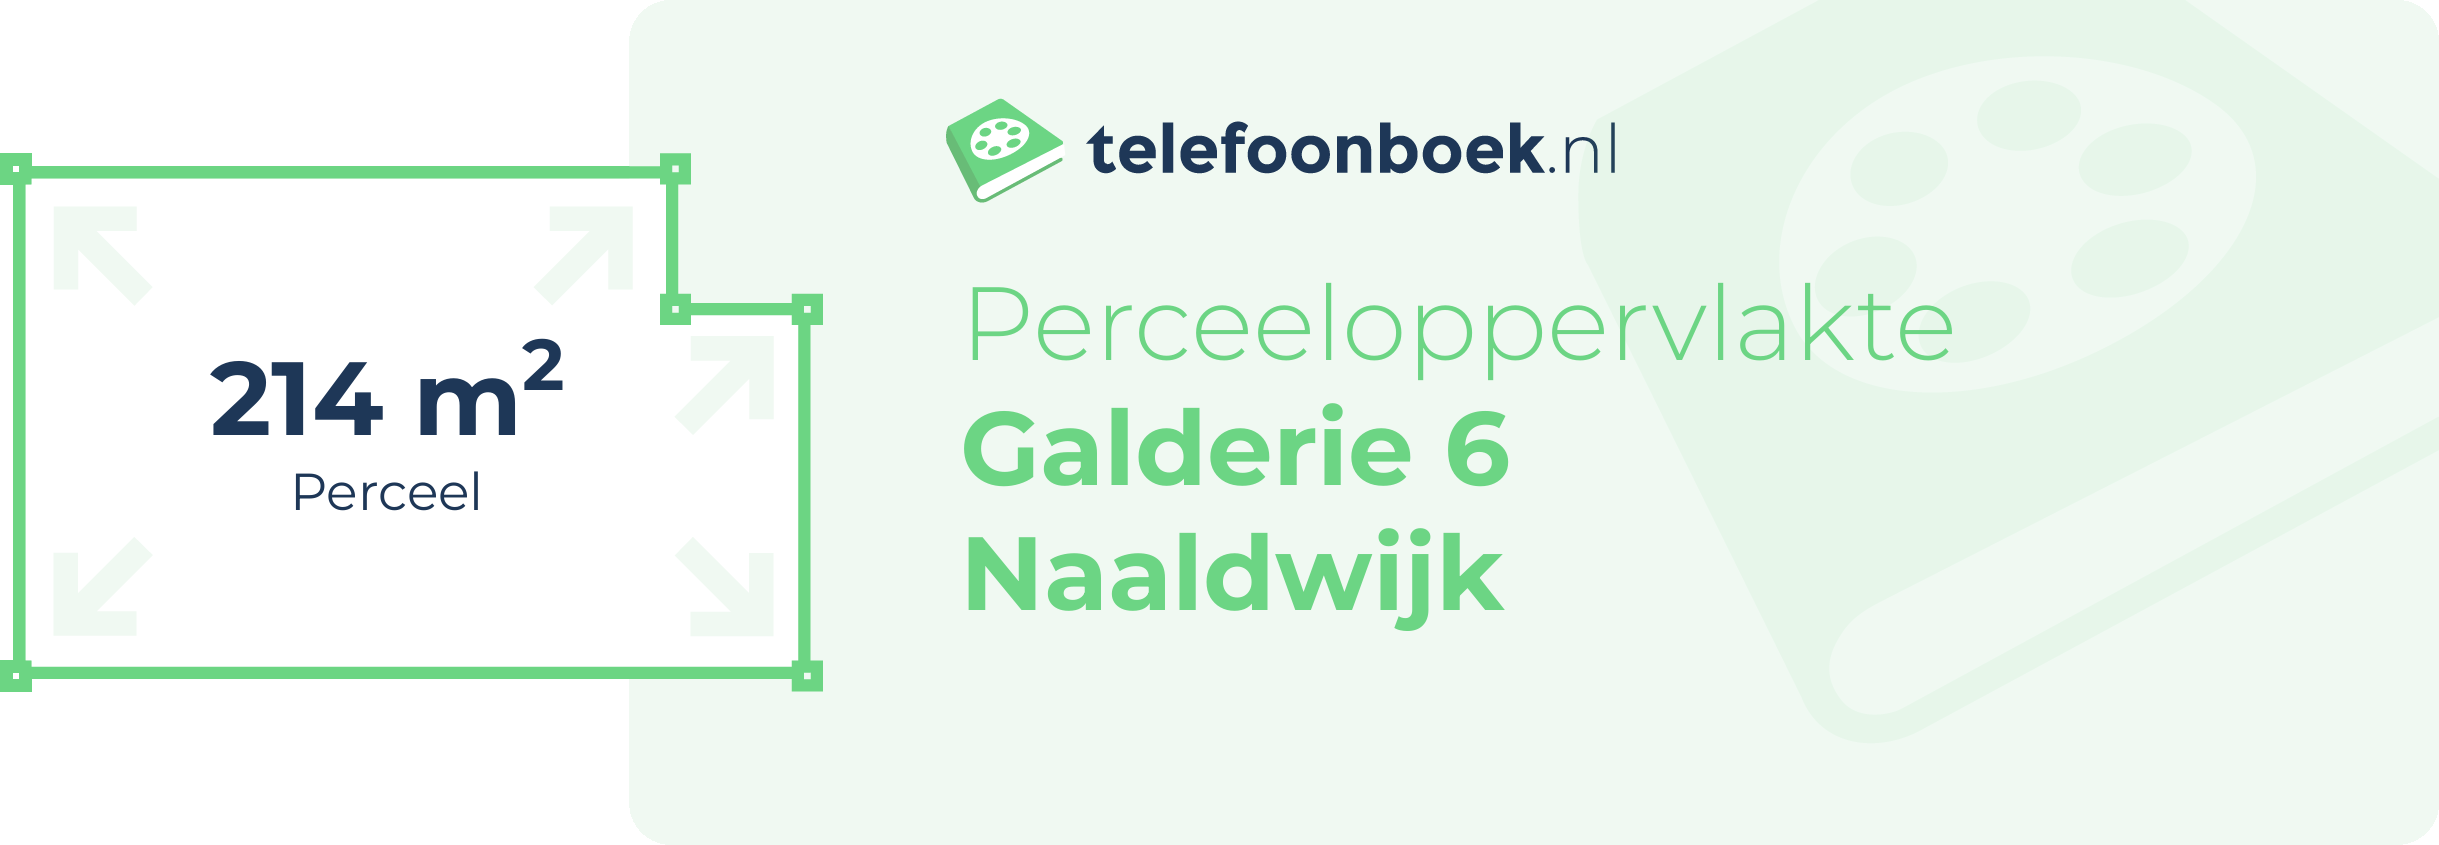 Perceeloppervlakte Galderie 6 Naaldwijk